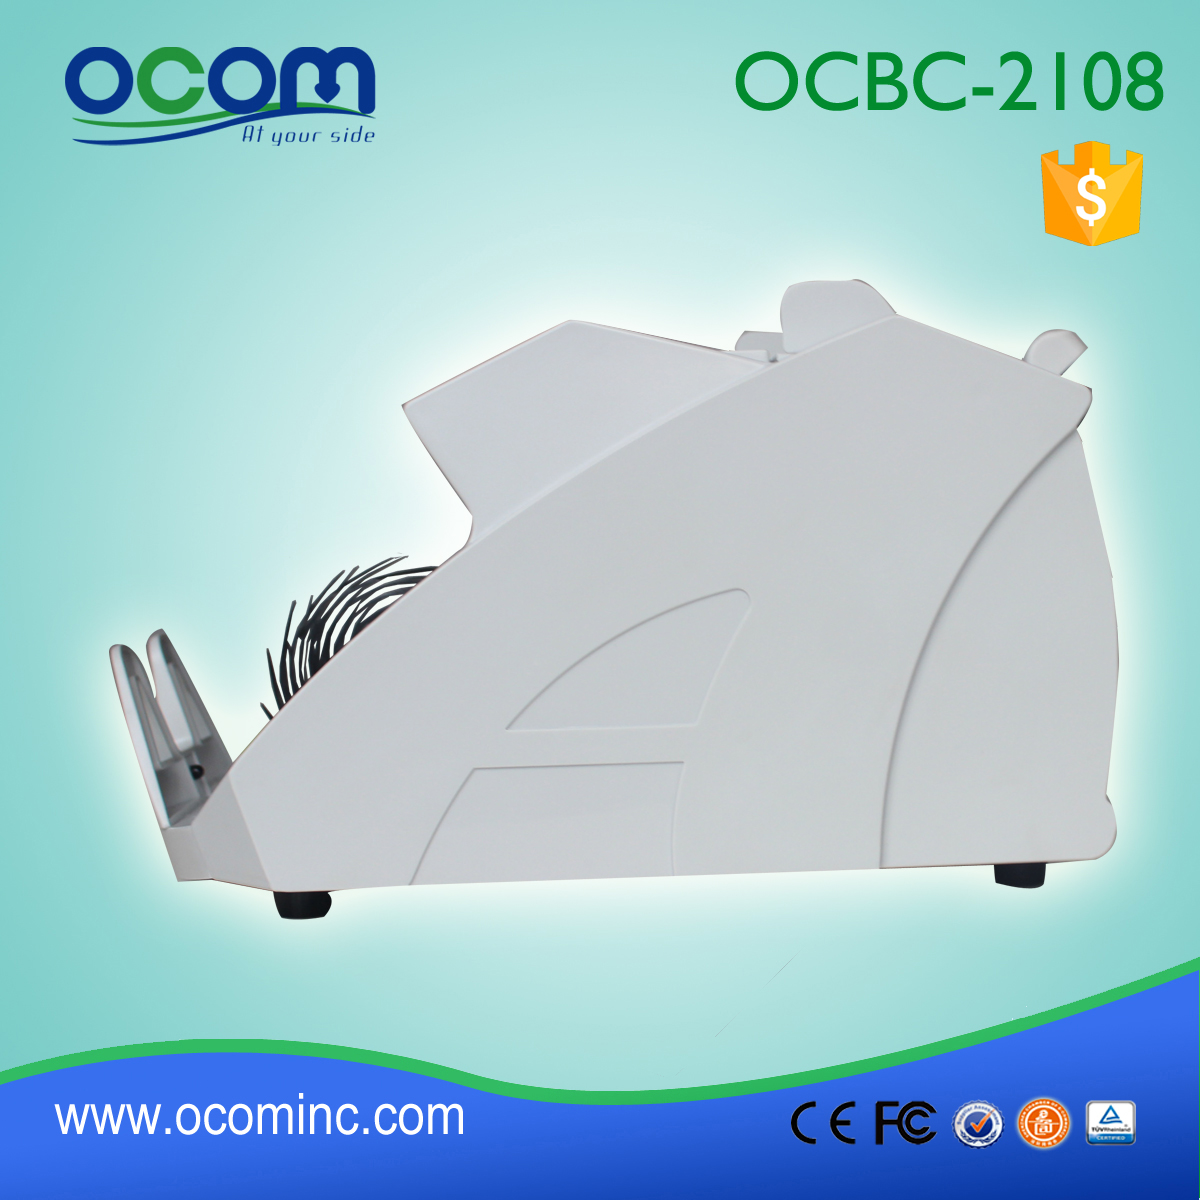 (OCBC-2108) - OCOM fatto 2016 ultimo banco di banconote con mg uv